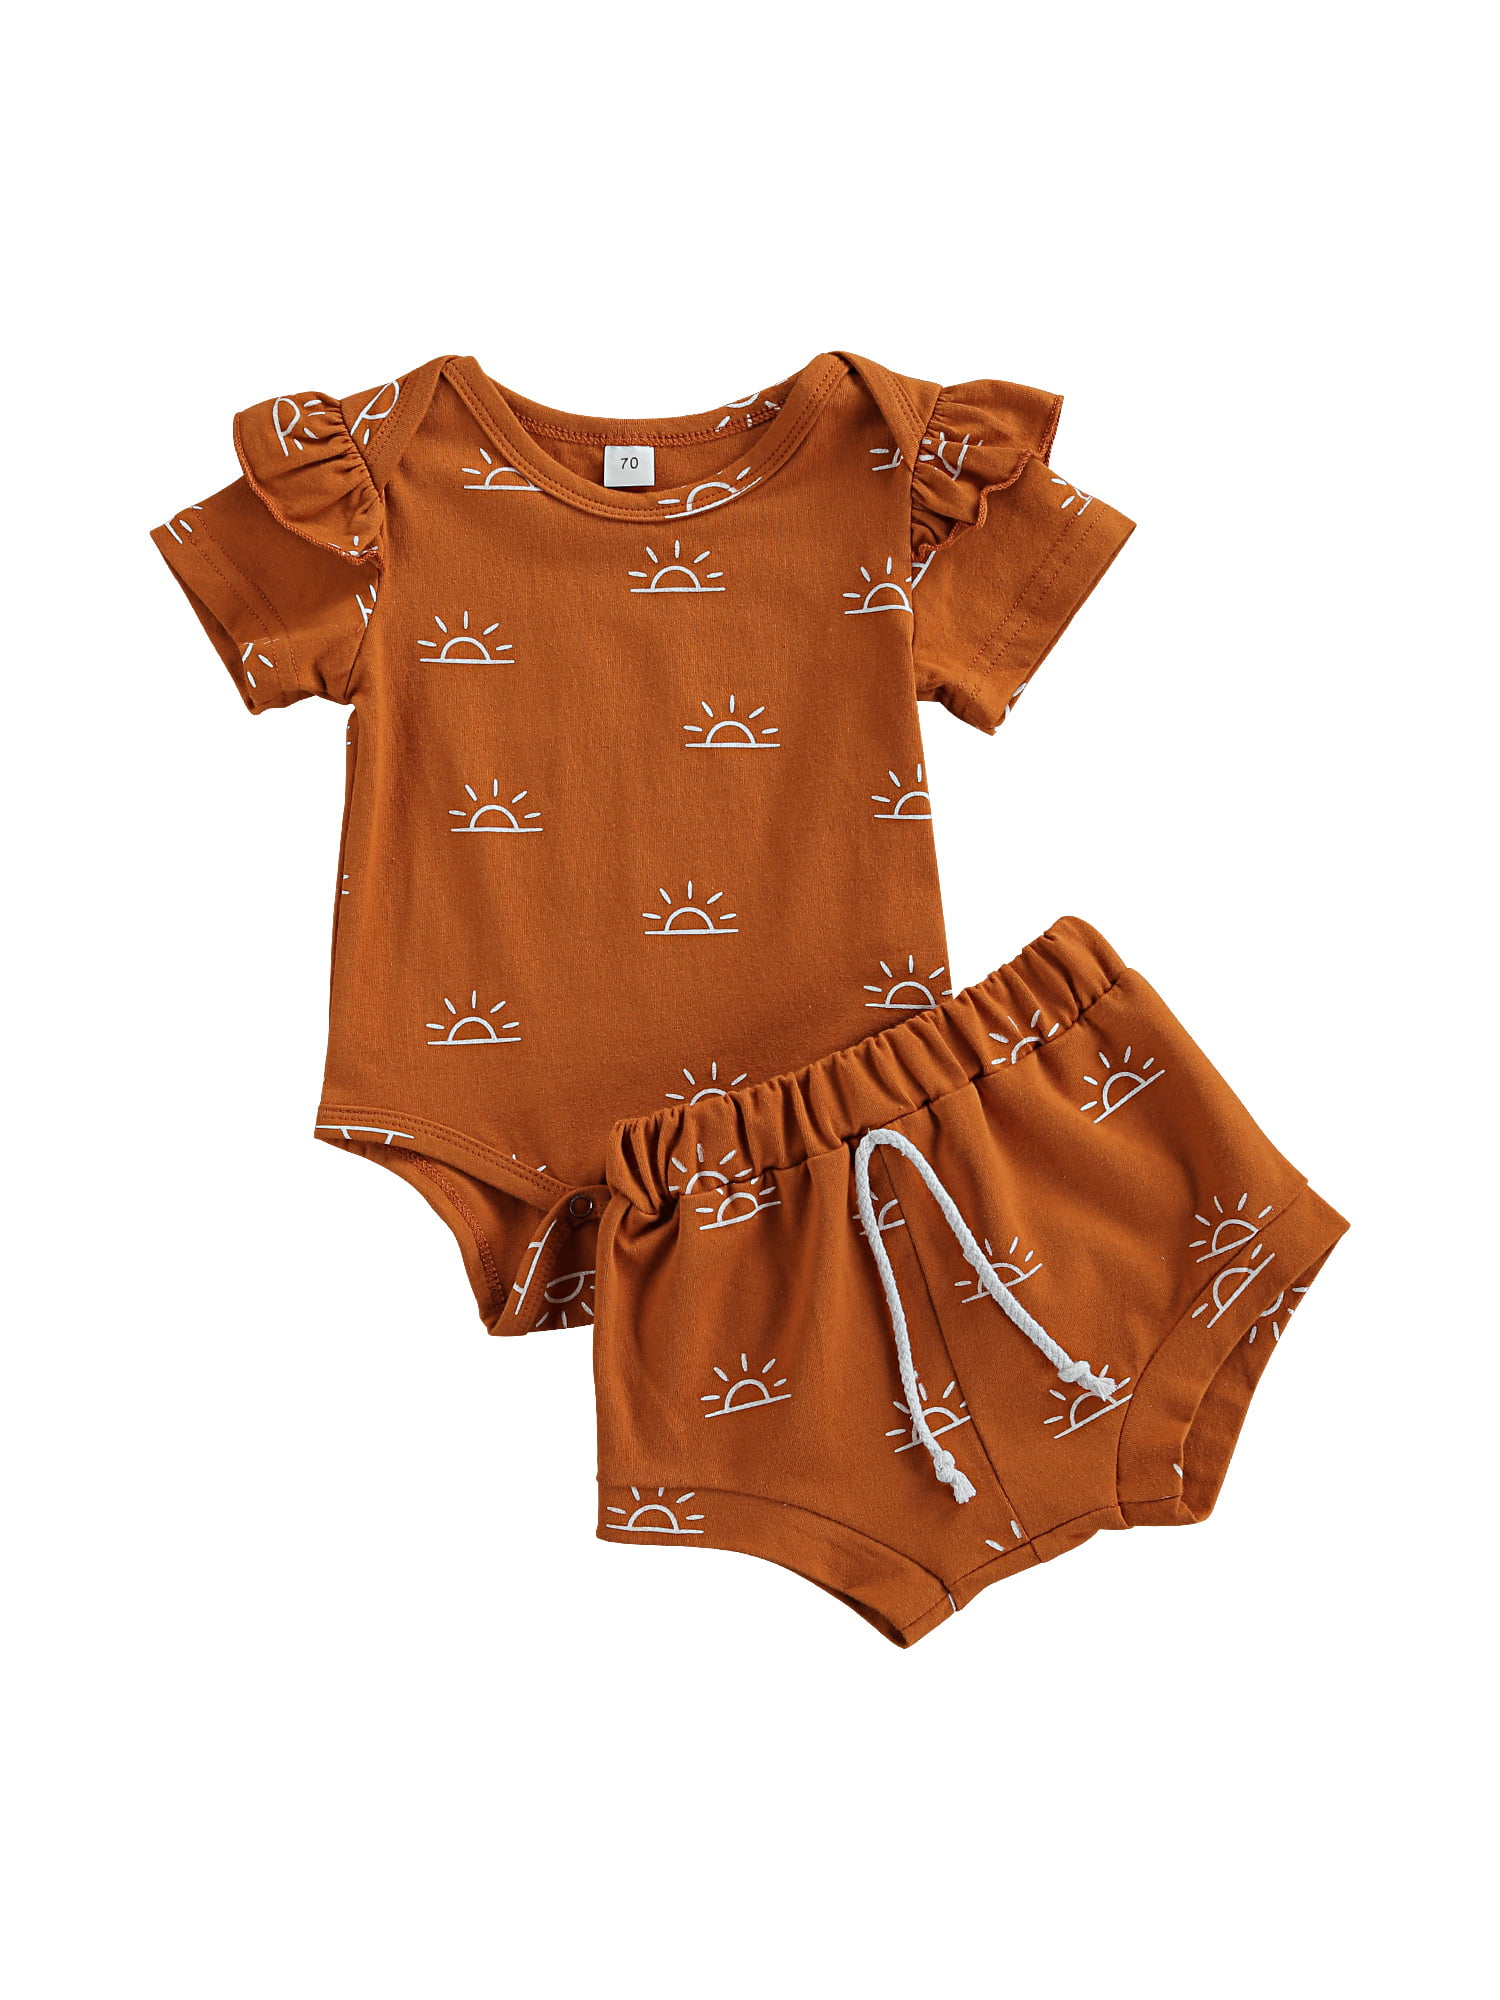 Details about   Stylish Formal Newborn Infant Clothes Cotton Short Suit Jumpsuit Shorts 2PCS/set 